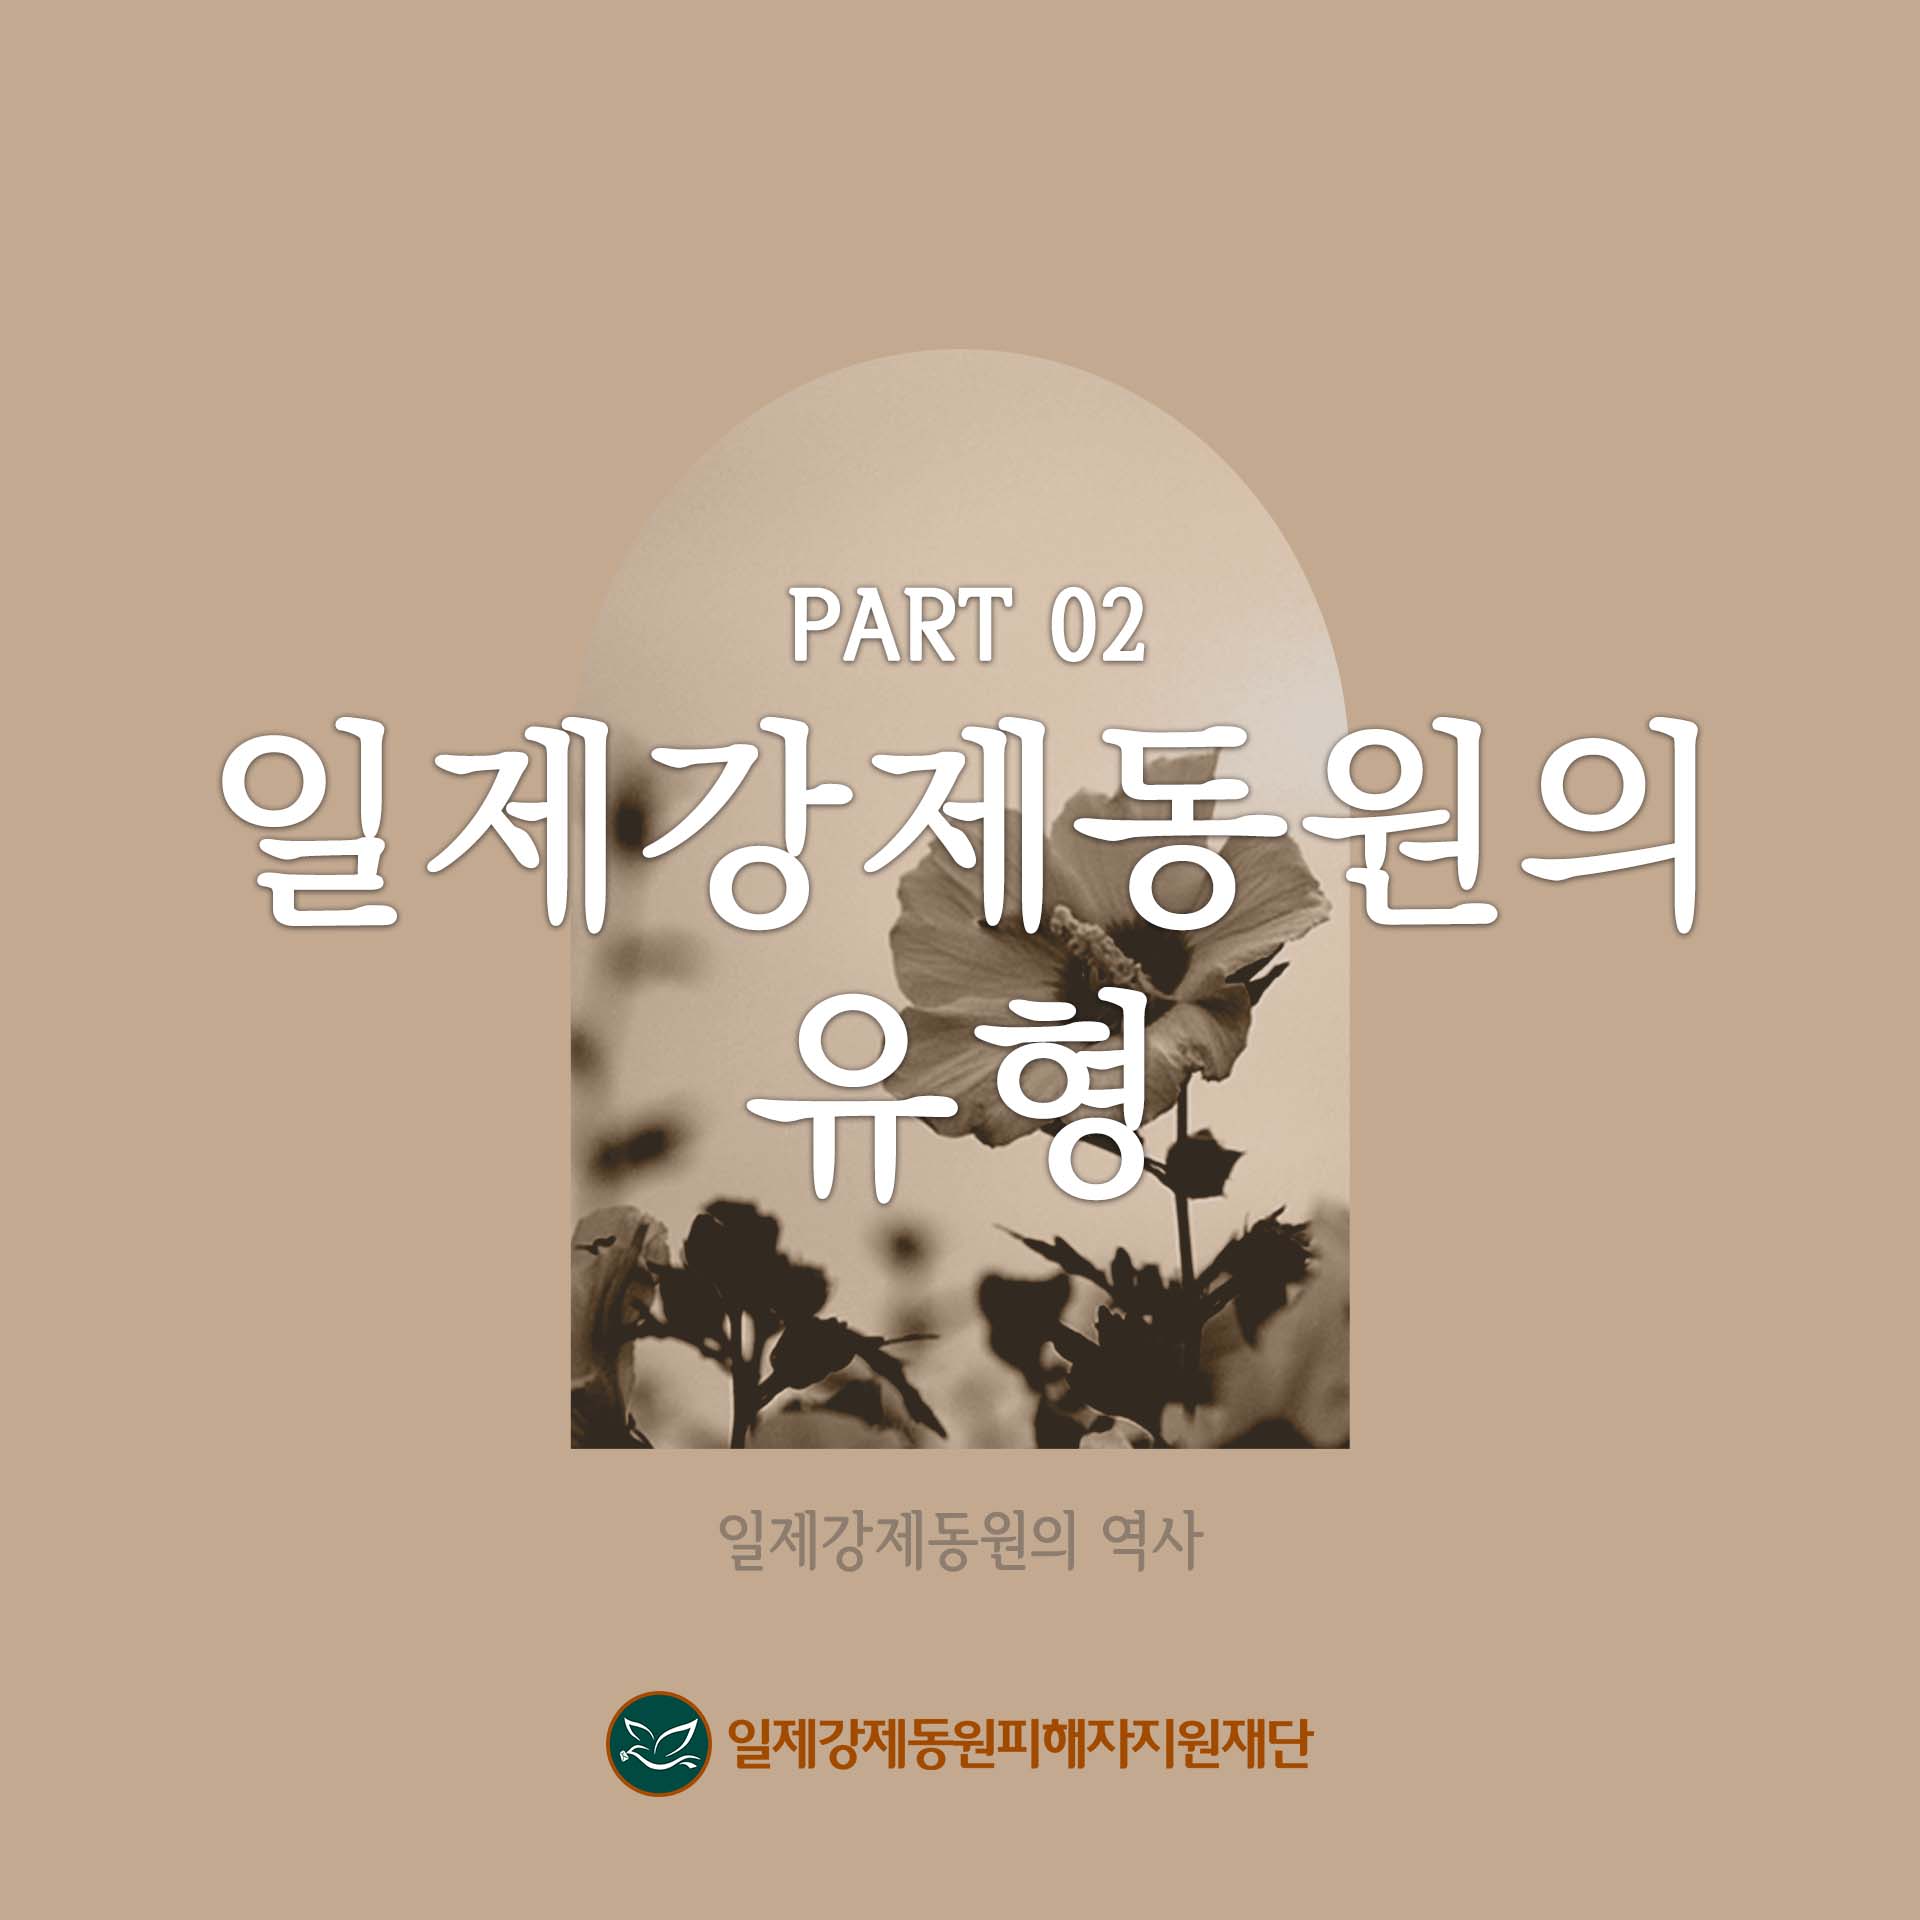 part2 일제강제동원의 유형-일제강제동원의 역사. 일제강제동원피해자지원재단